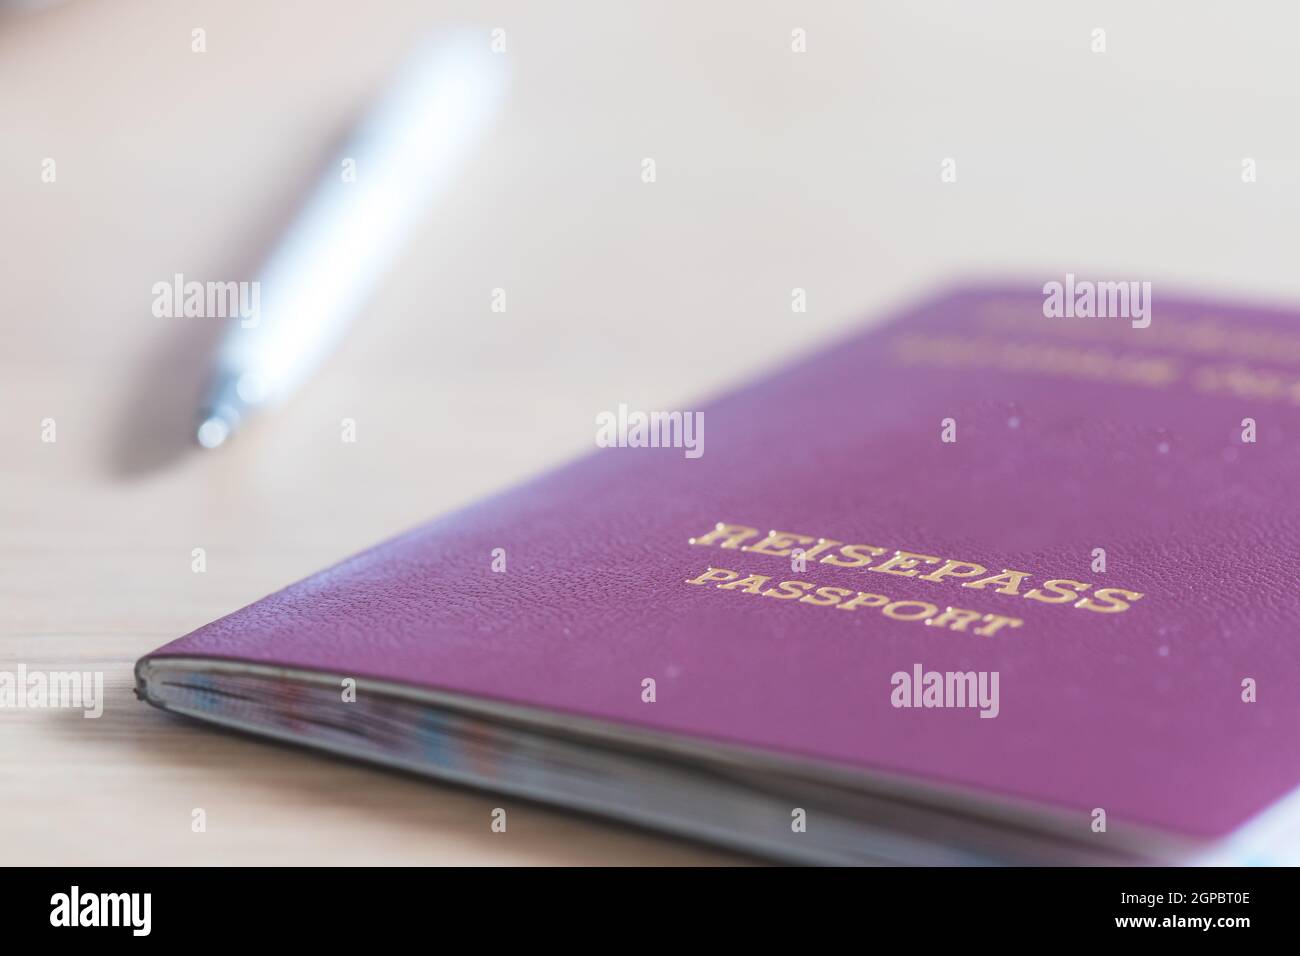 Primo piano con le dita in possesso di un passaporto per viaggiare, aeroporto, "Reisepass Passport" Foto Stock